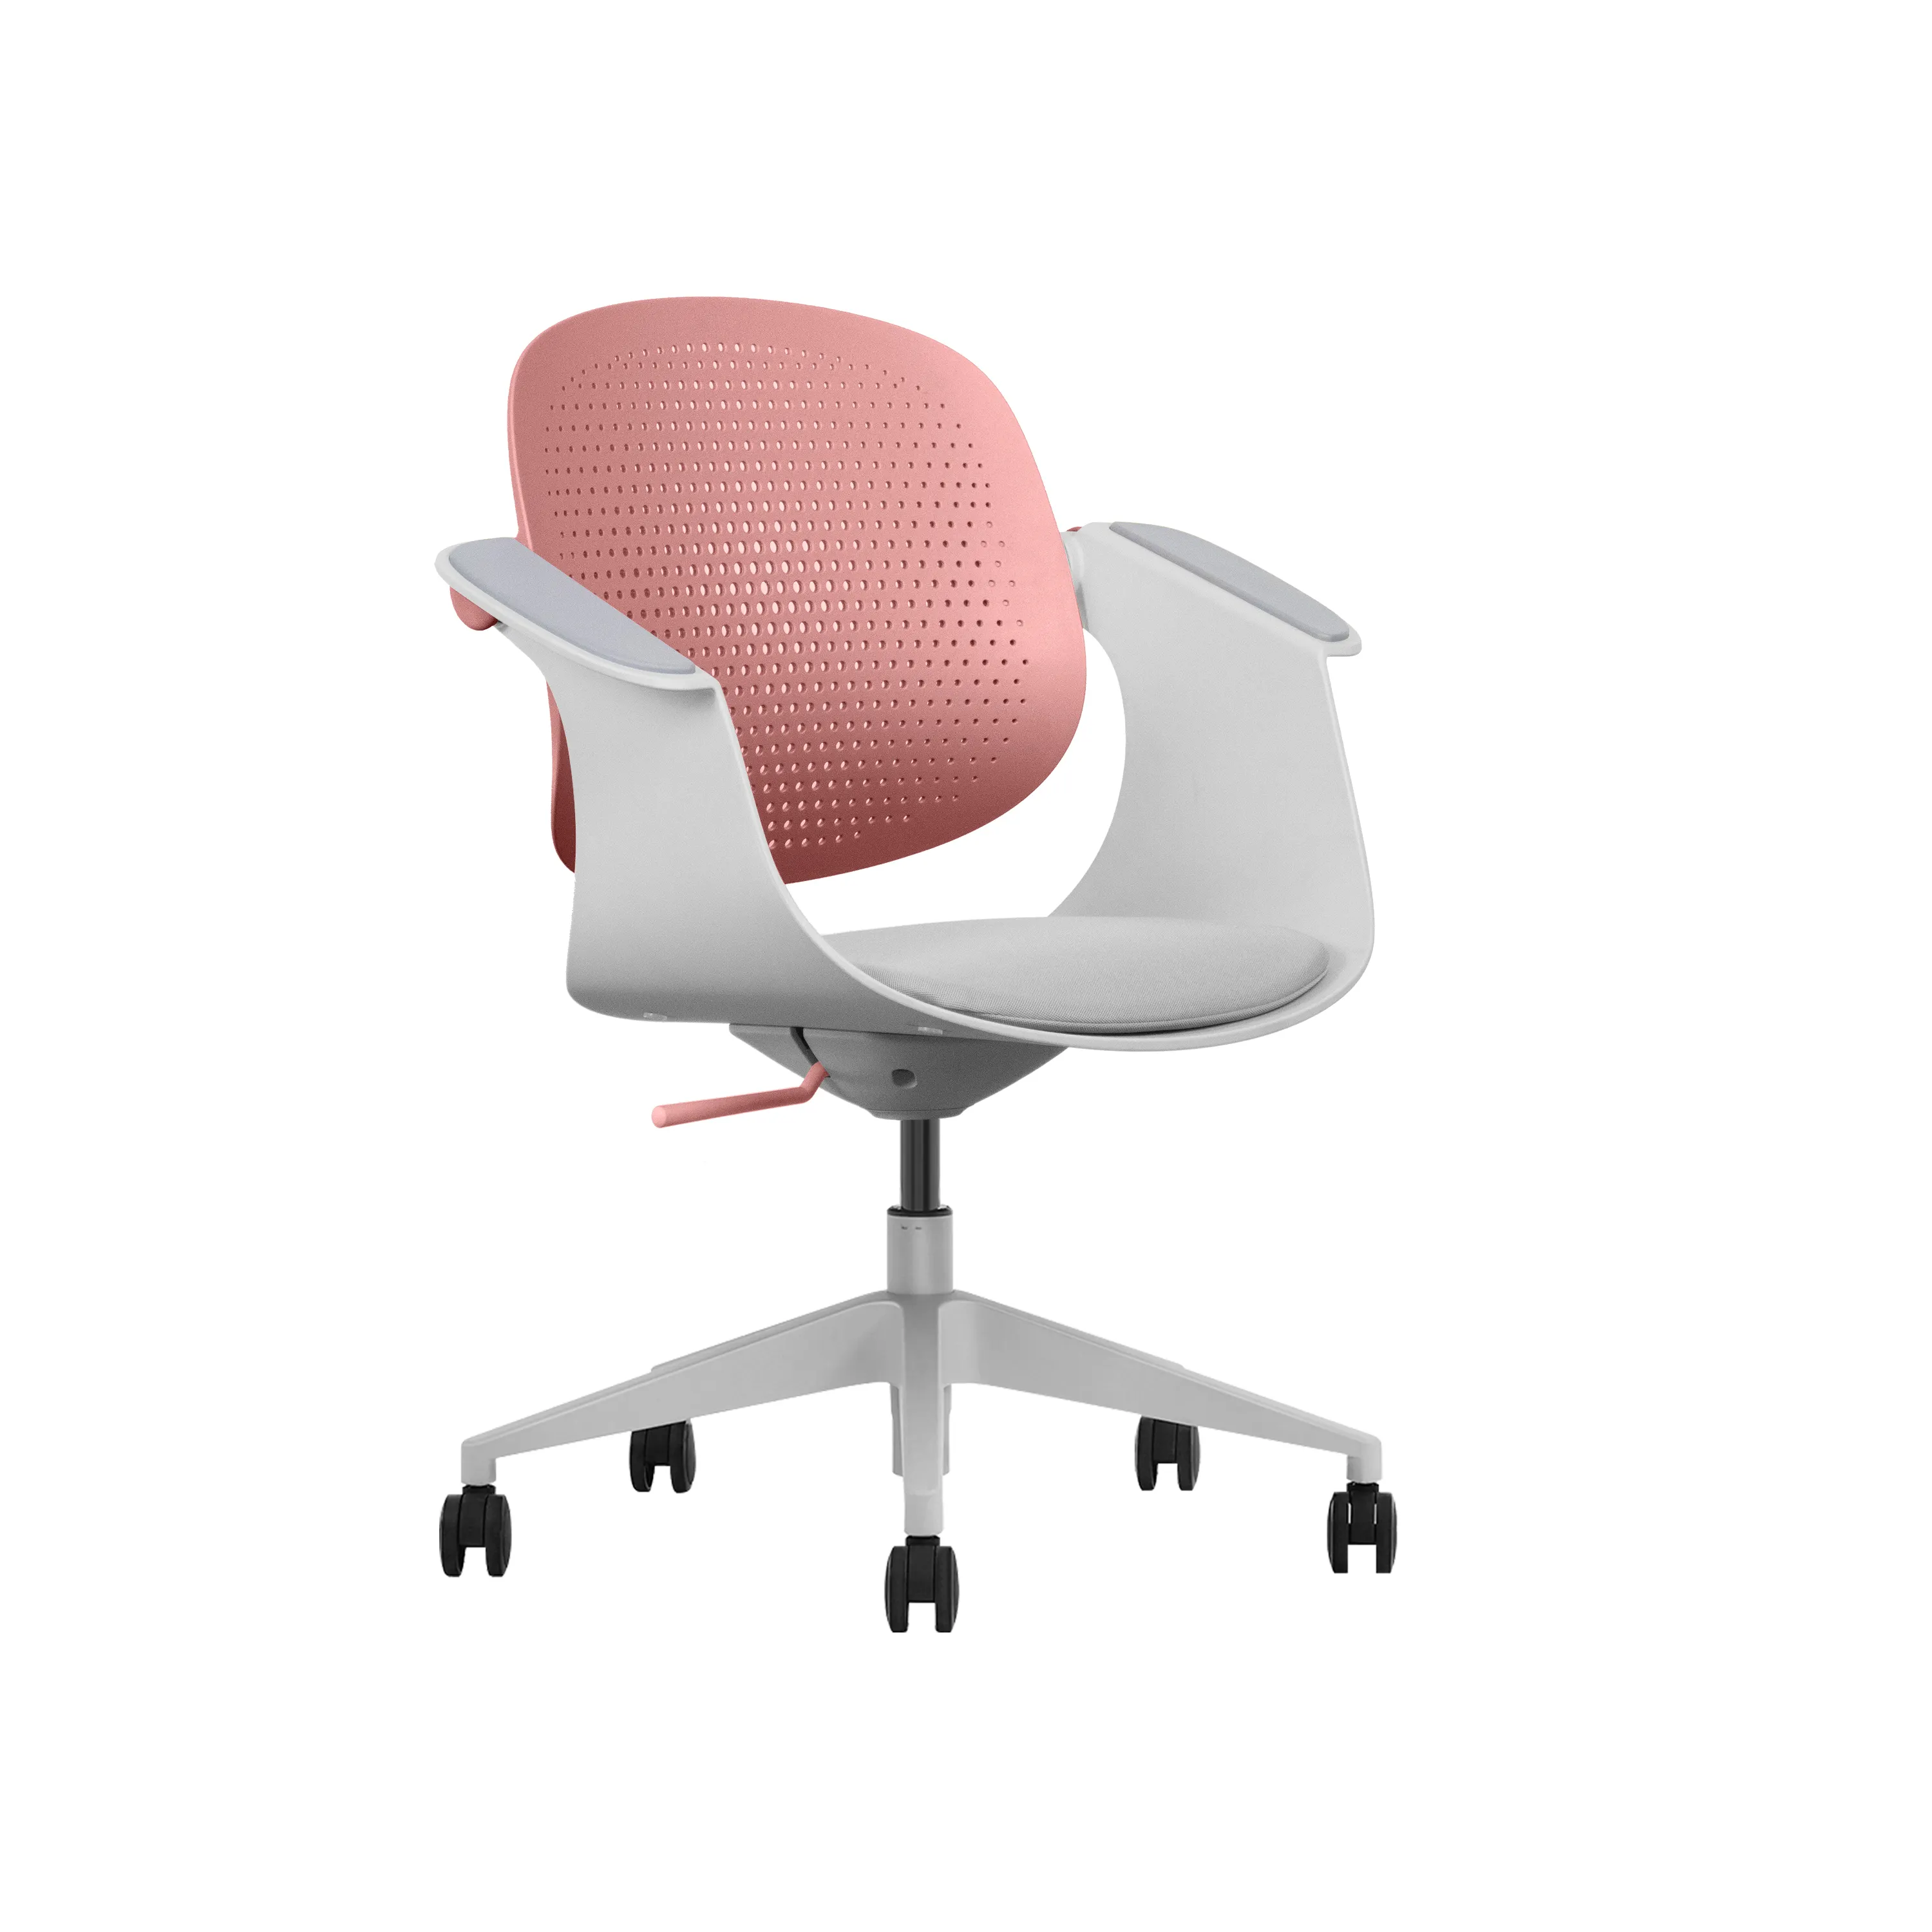 Ucuz premium toptan ziyaretçi sandalyesi rahat döner çalışma modern eğlence sağlıklı ofis koltuğu renkli hareketli